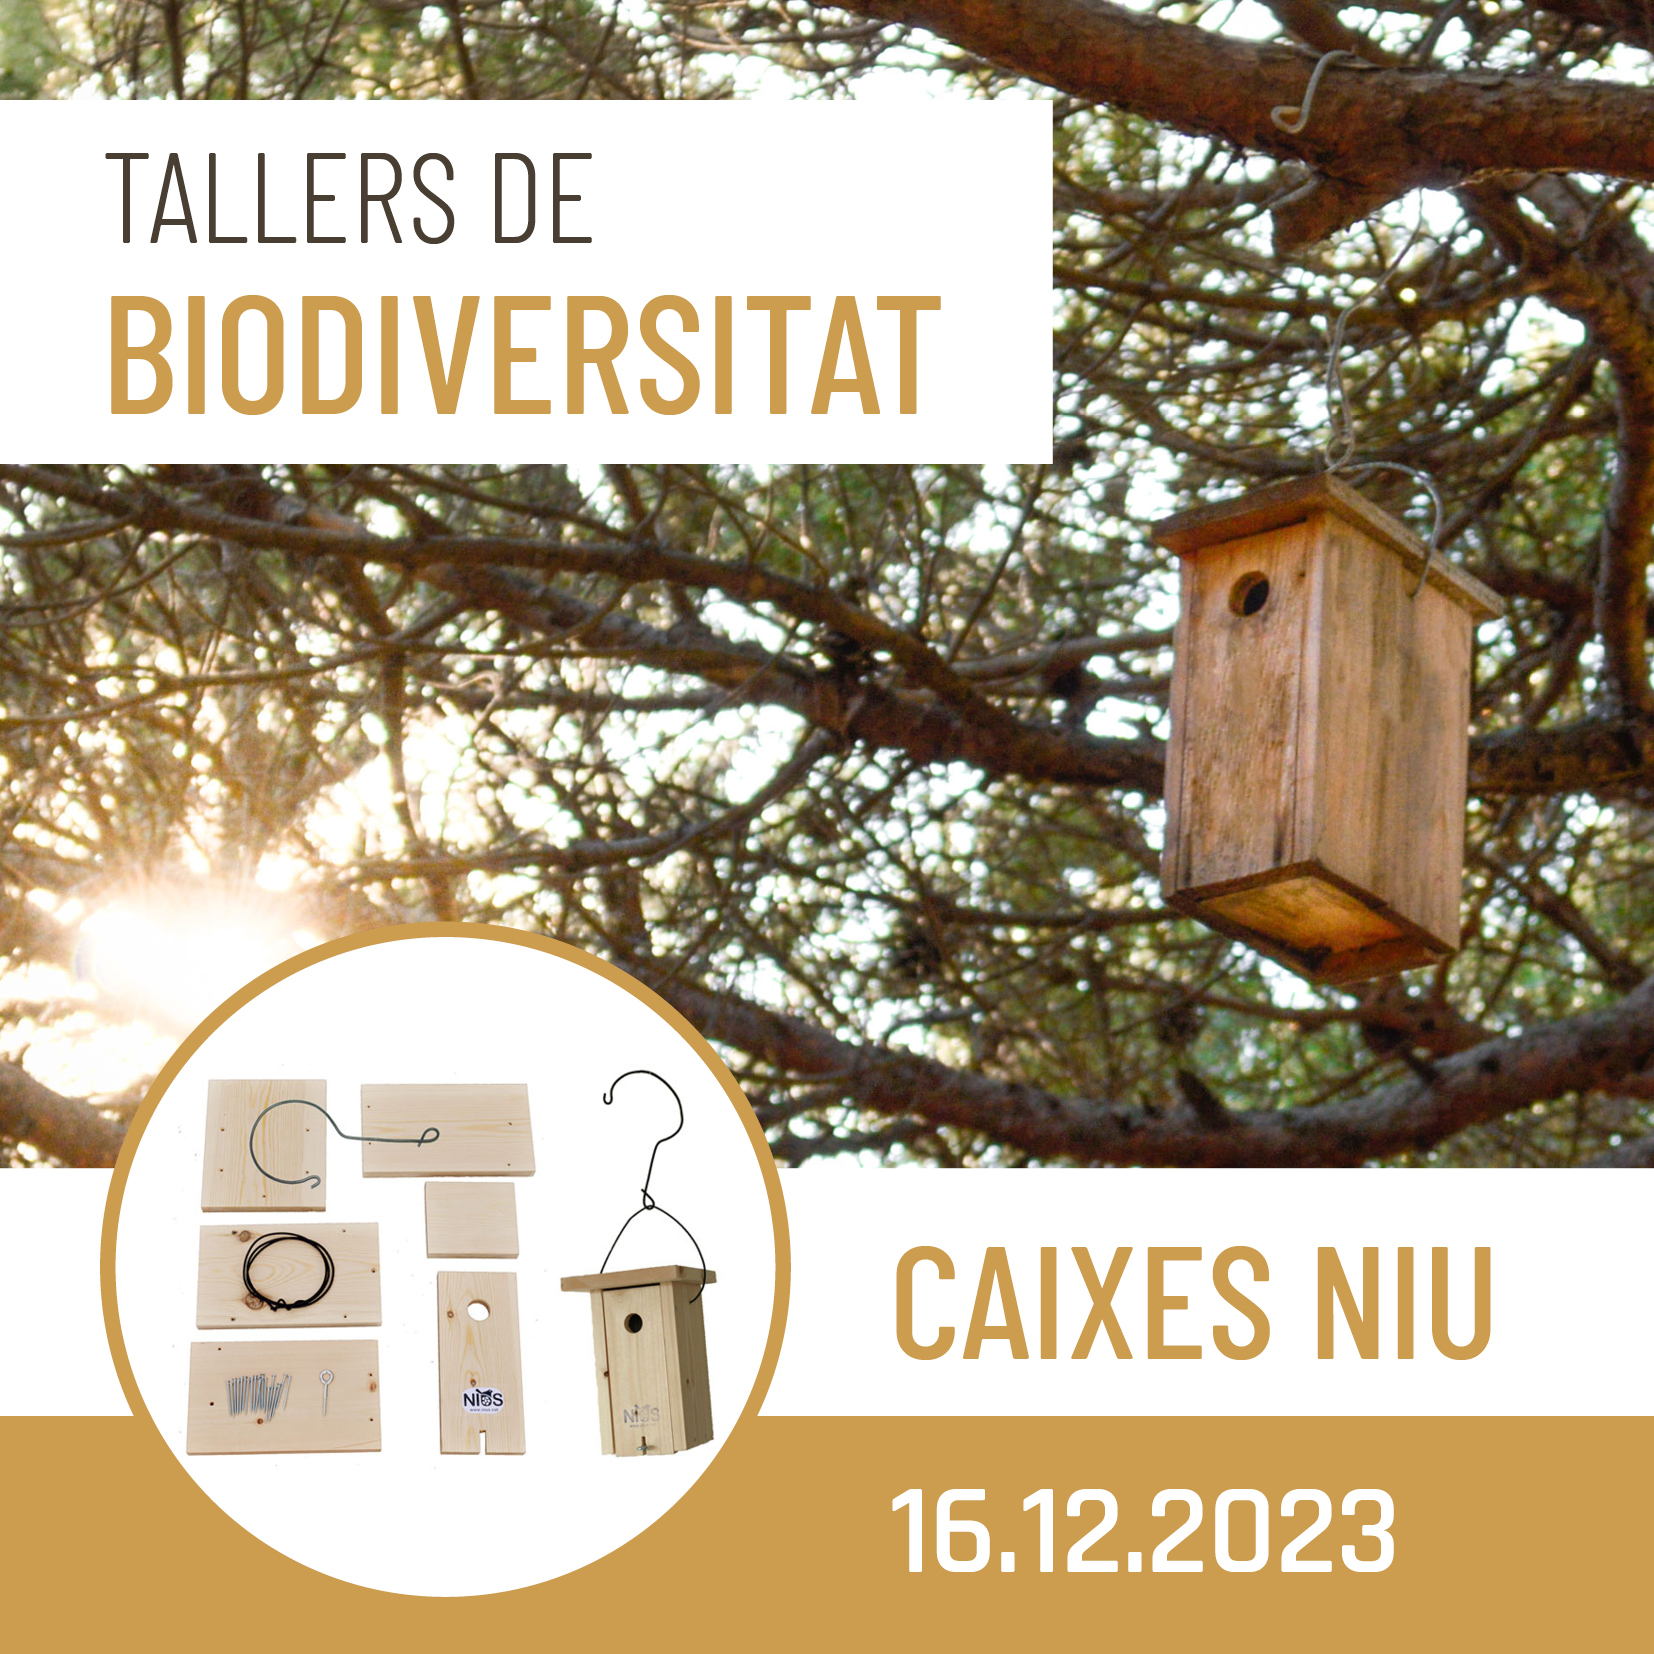 Tallers de Biodiversitat (I) – Caixes niu